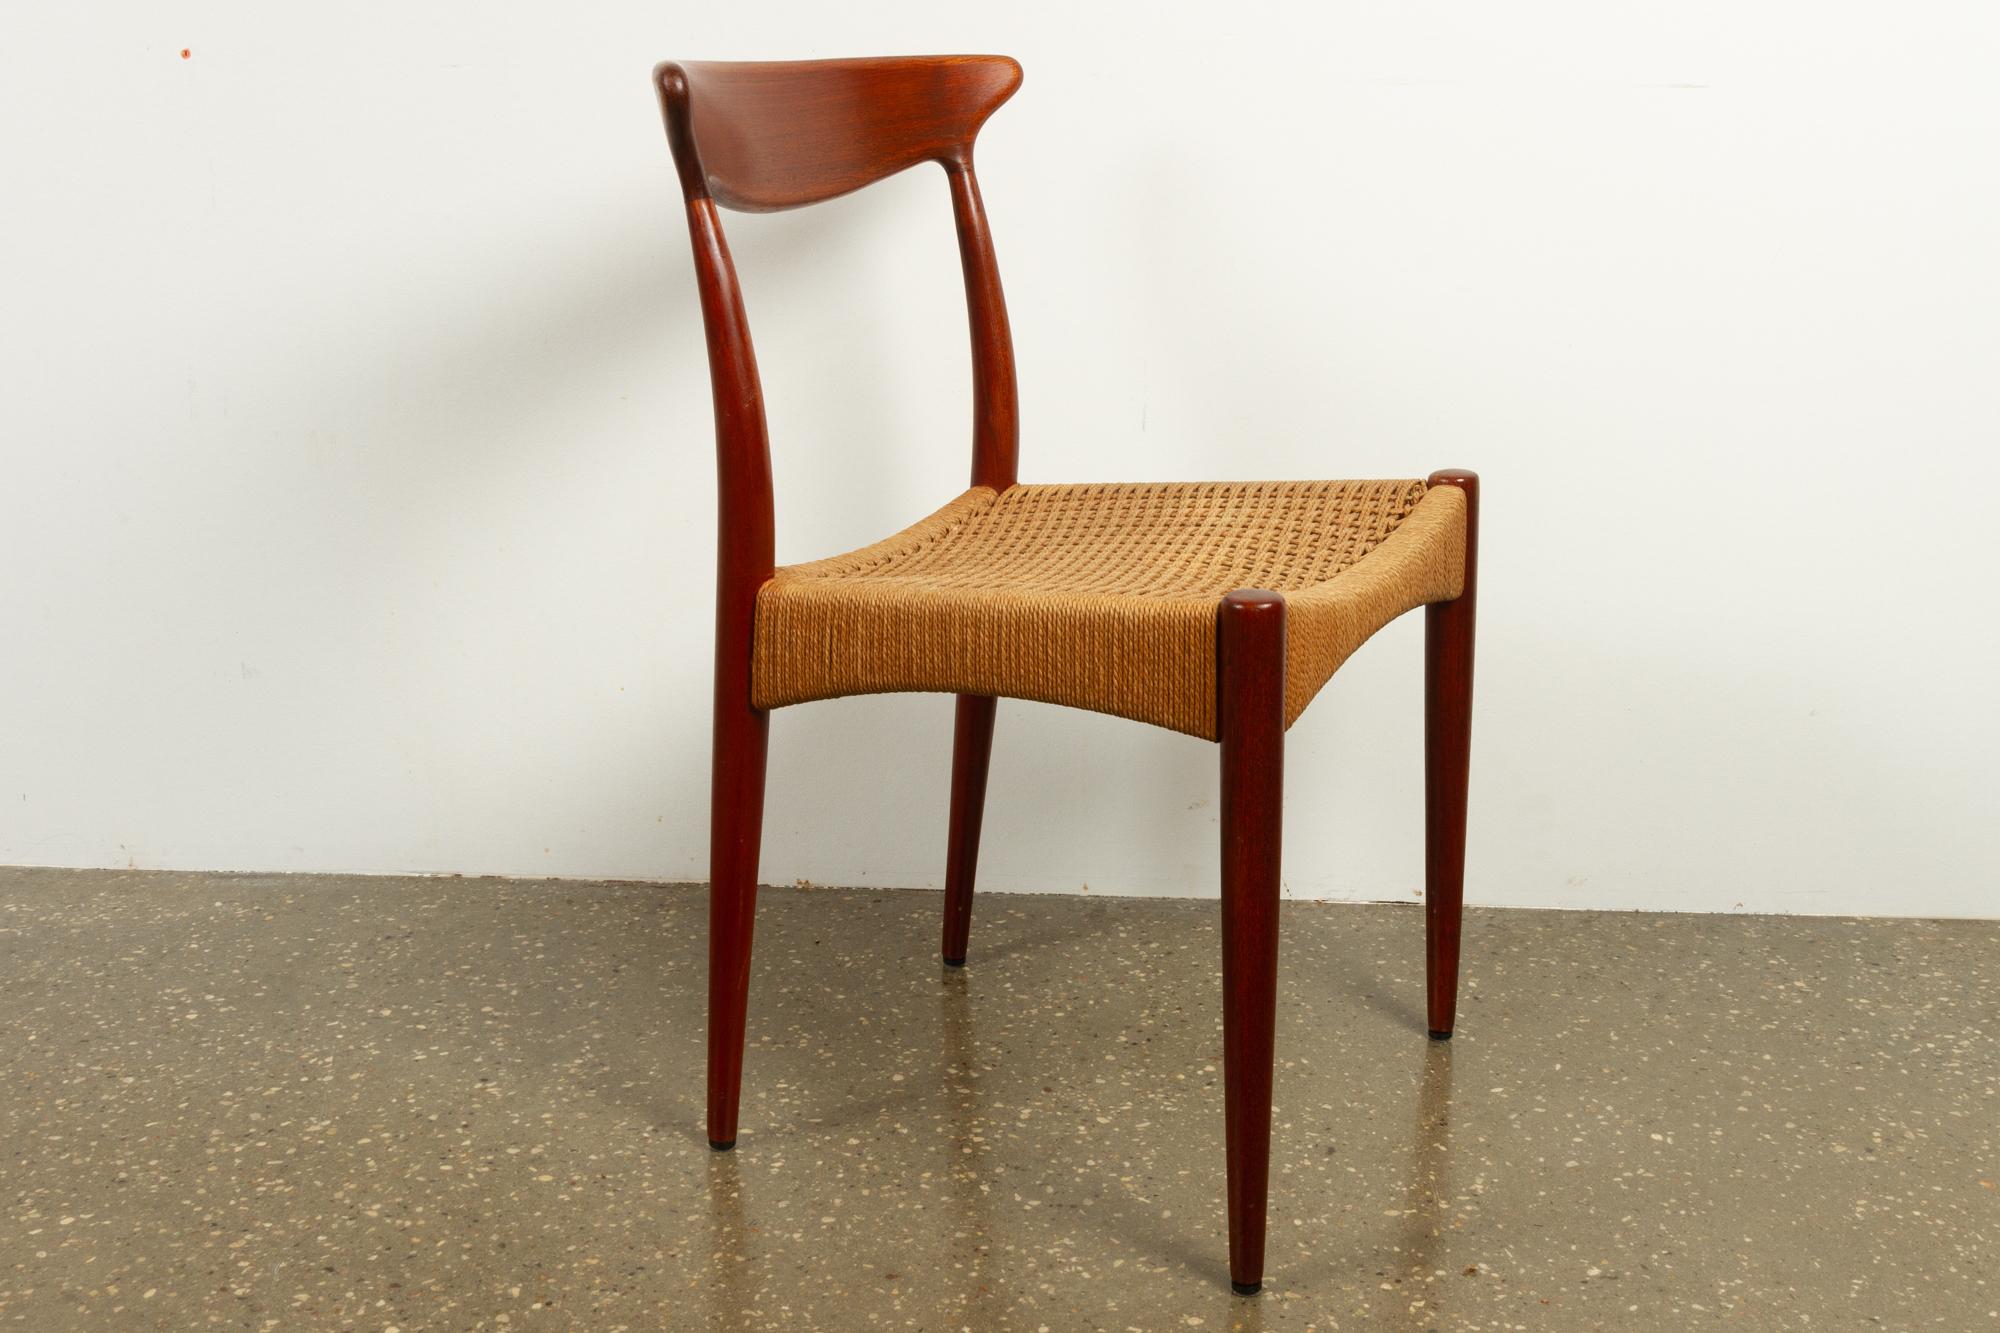 Mid-Century Modern Vintage Danish Teak Chair by Arne Hovmand-Olsen for Mogens Kold, 1950s